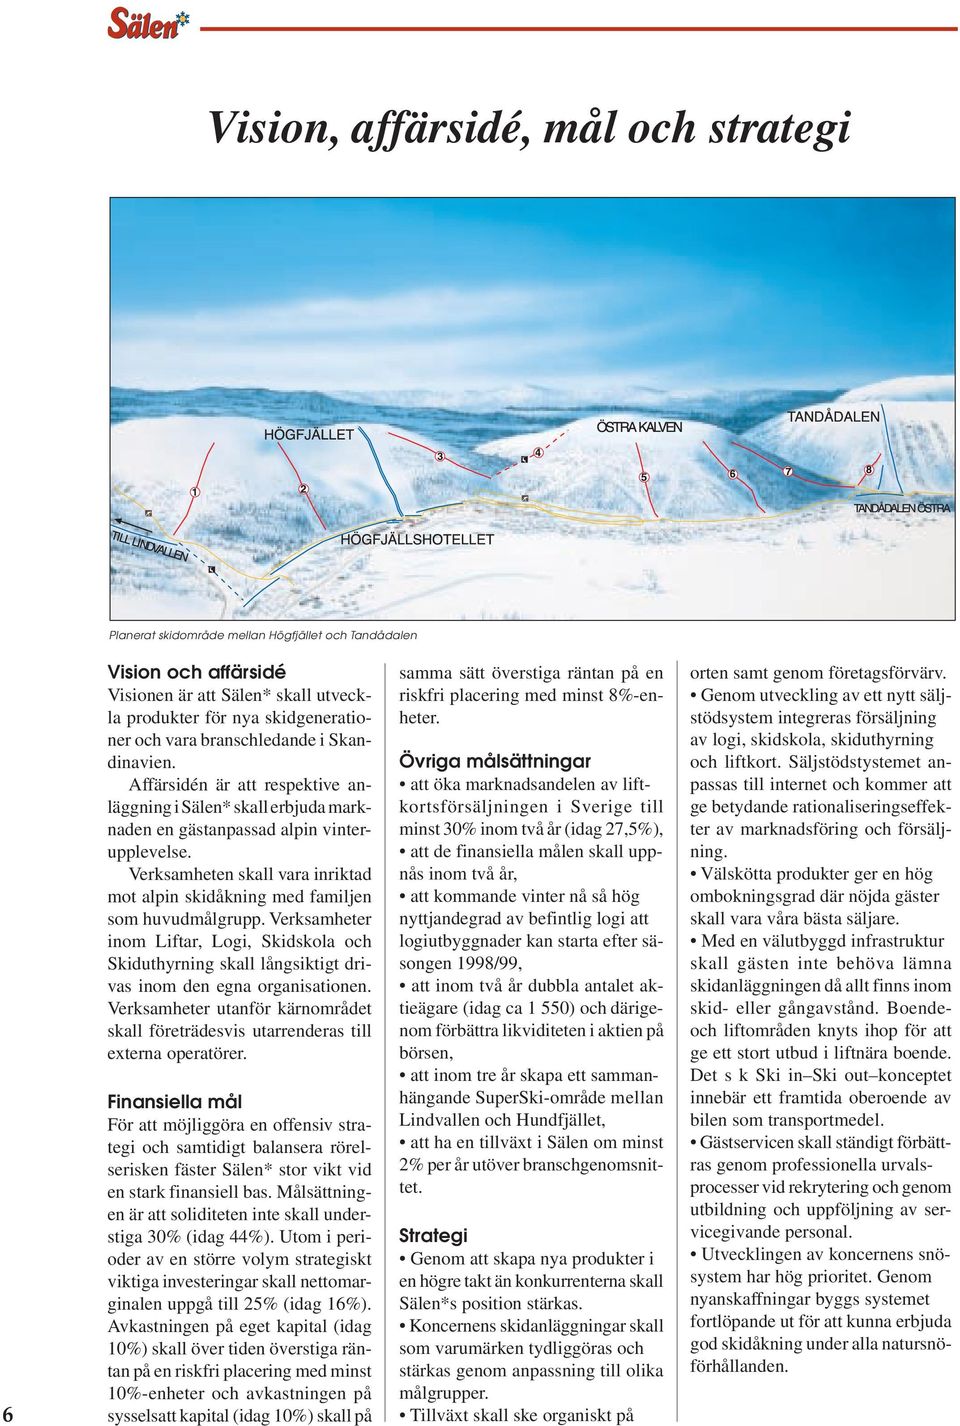 Verksamheten skall vara inriktad mot alpin skidåkning med familjen som huvudmålgrupp. Verksamheter inom Liftar, Logi, Skidskola och Skiduthyrning skall långsiktigt drivas inom den egna organisationen.